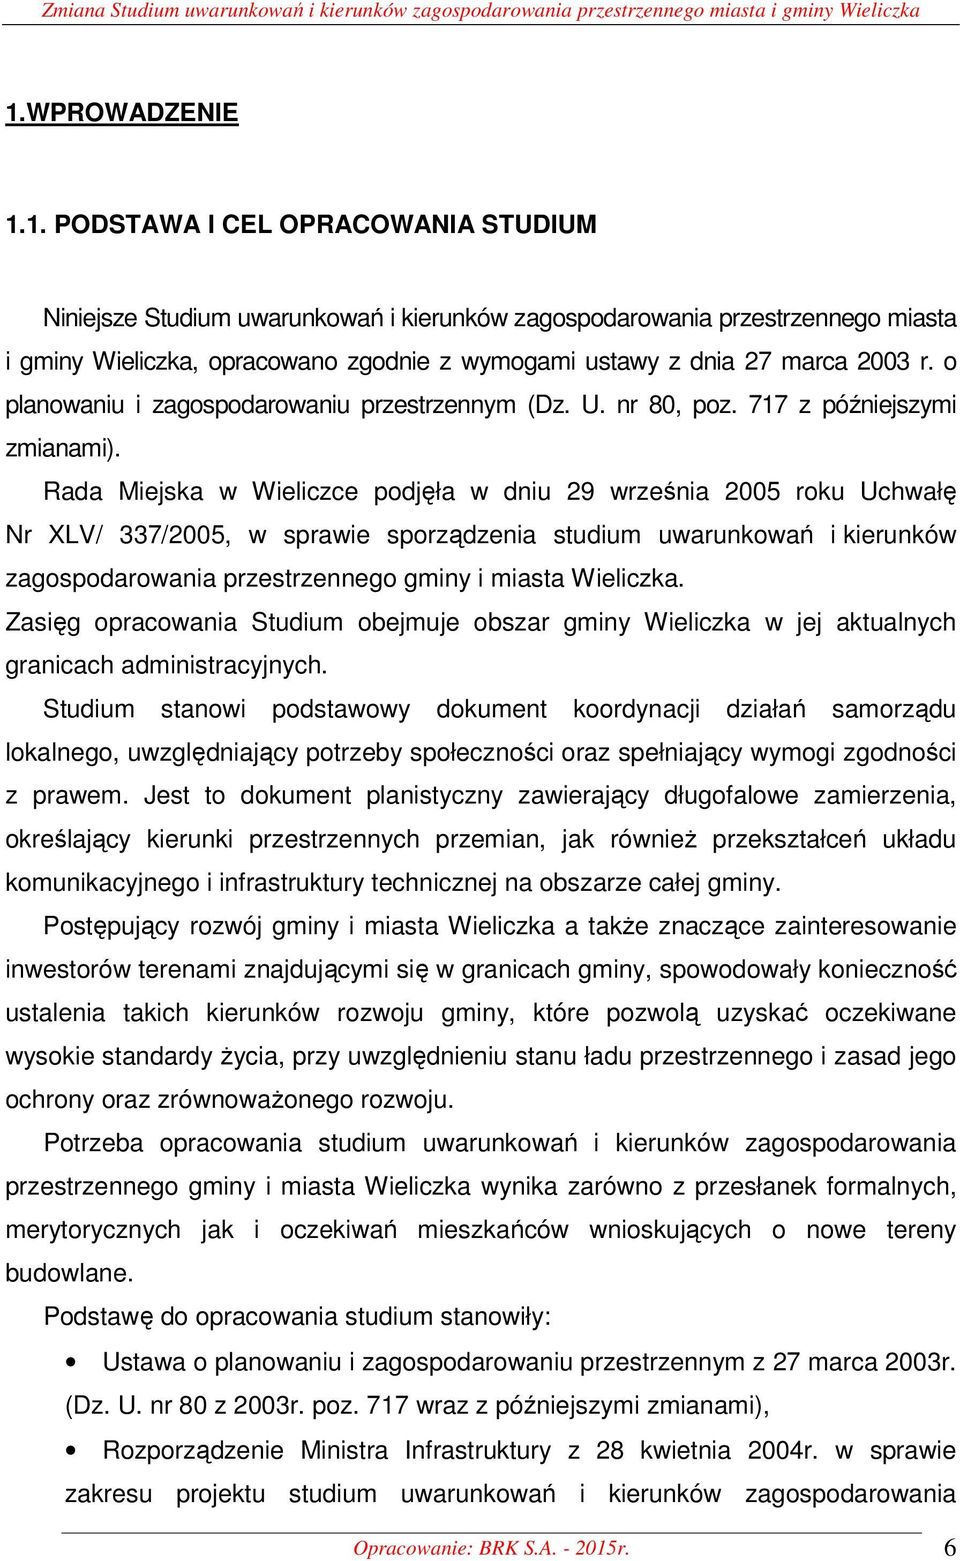 1. PODSTAWA I CEL OPRACOWANIA STUDIUM Niniejsze Studium uwarunkowań i kierunków zagospodarowania przestrzennego miasta i gminy Wieliczka, opracowano zgodnie z wymogami ustawy z dnia 27 marca 2003 r.